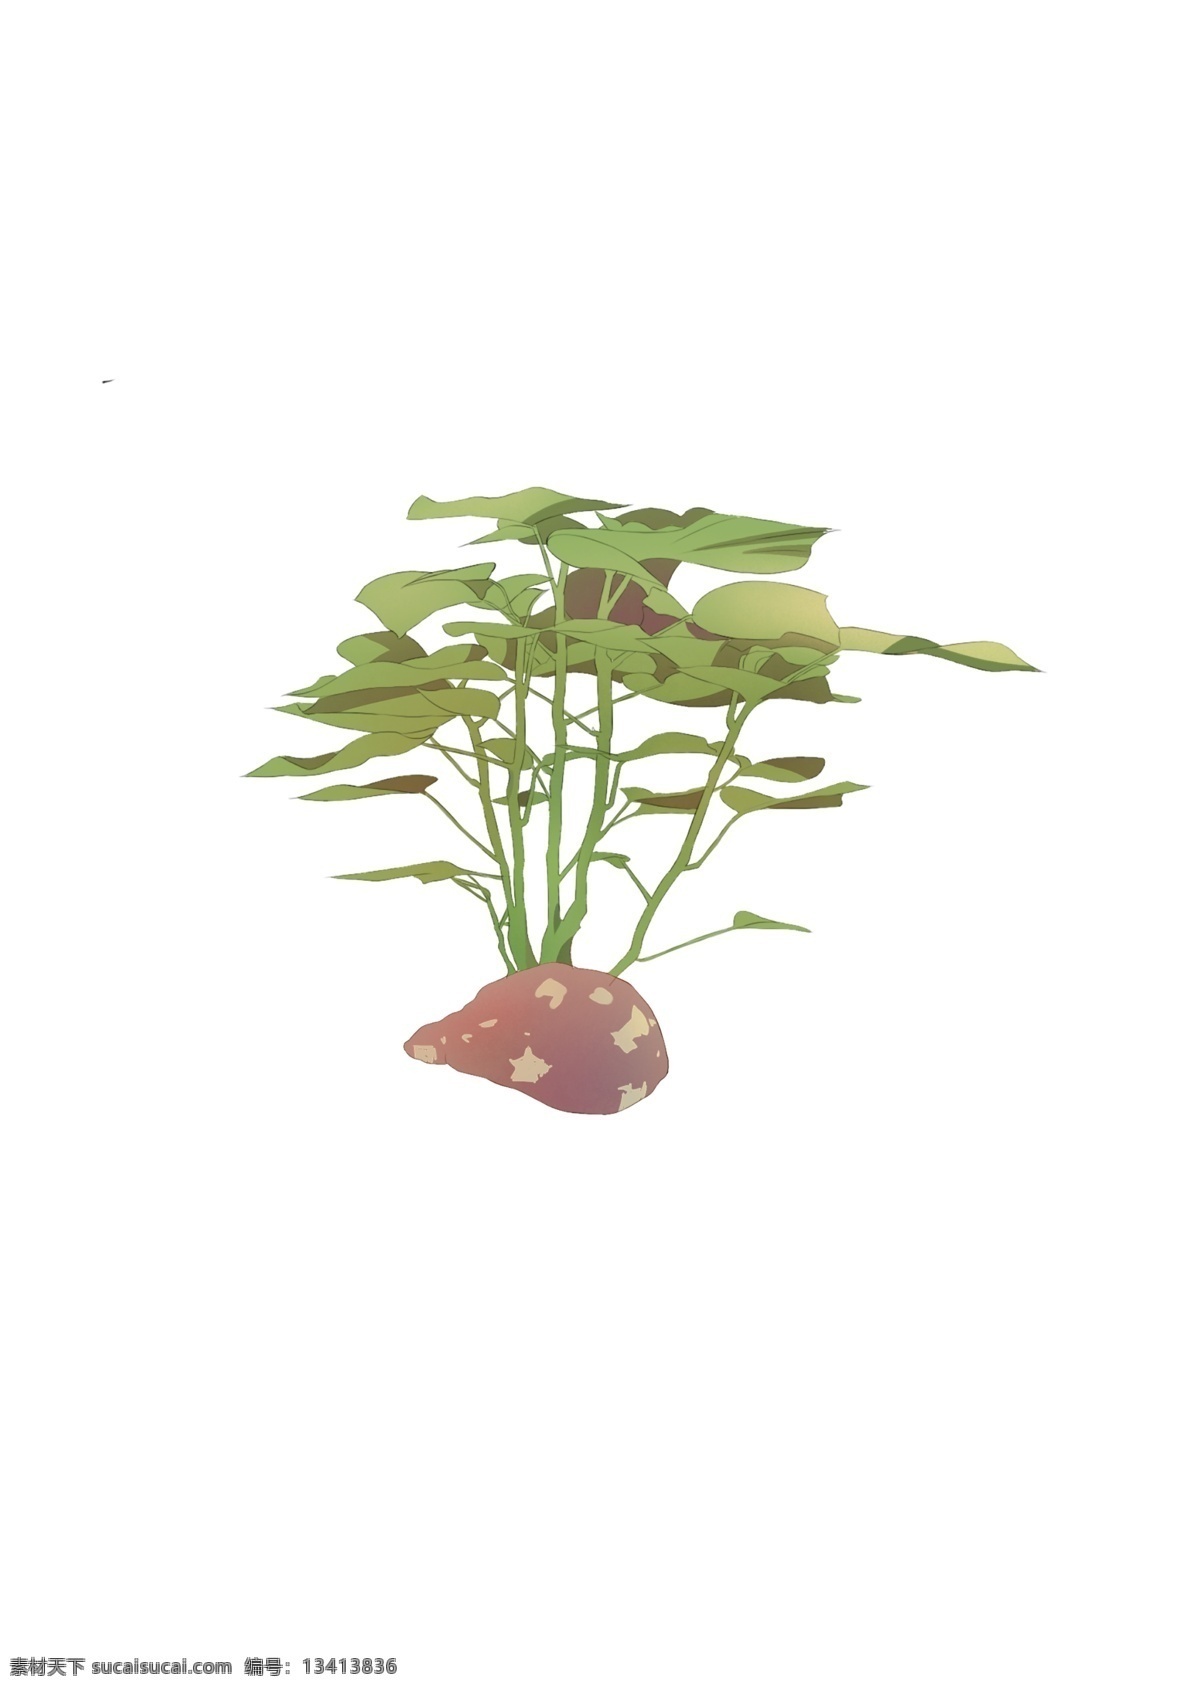 手绘 卡通 红薯 生长 图 商用 卡通板绘 食物 蔬菜植物 五谷 果实与绿叶 平涂 可爱 小清新 无背景 png文件